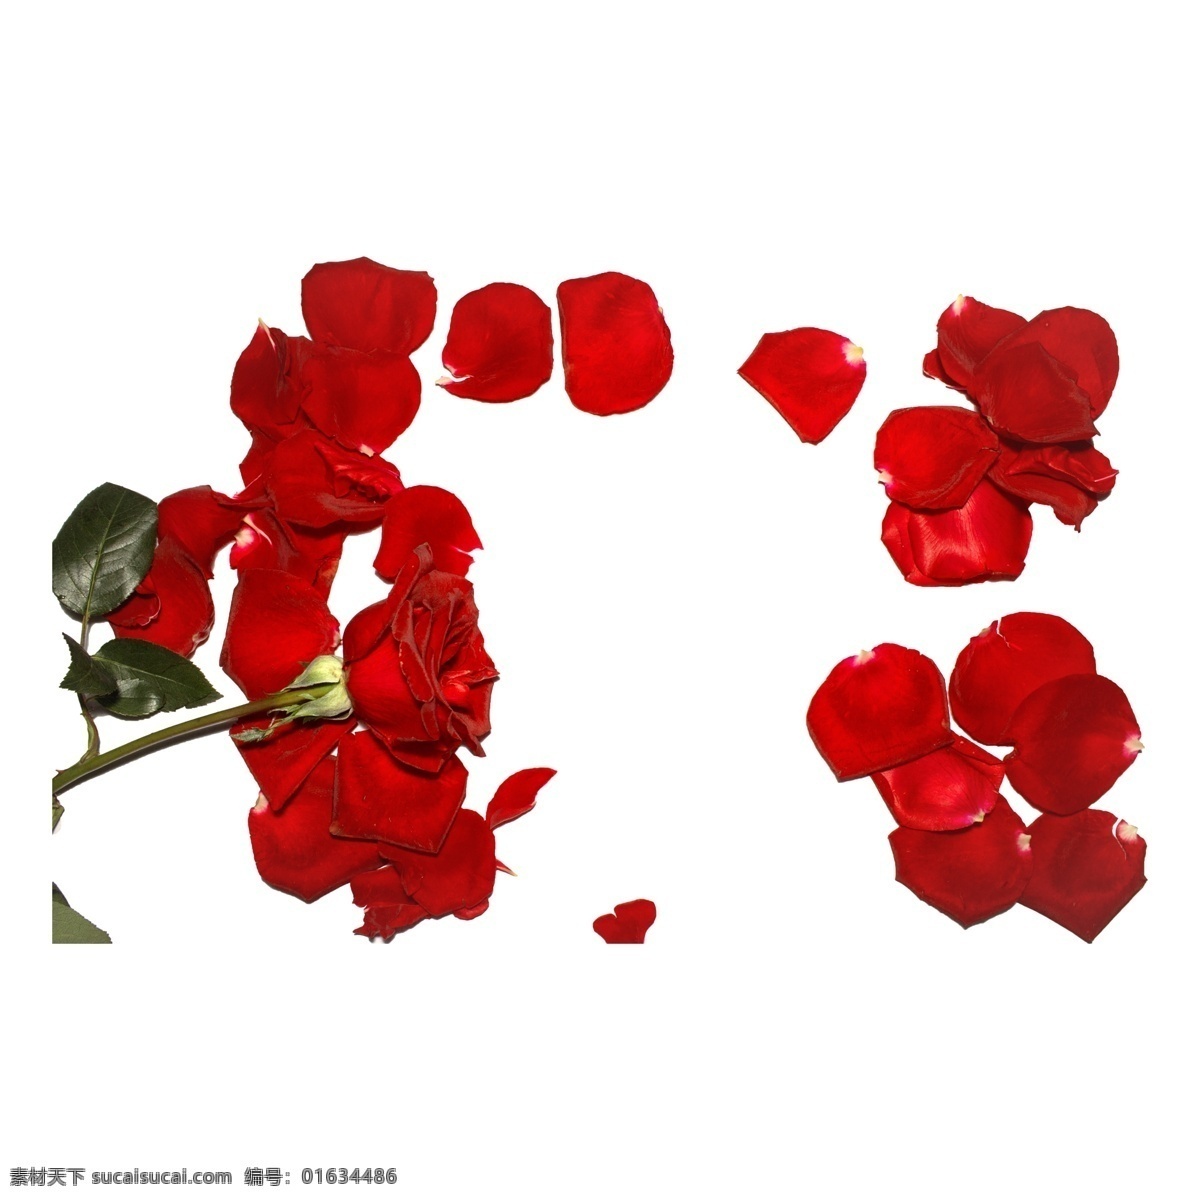 玫瑰 花瓣 实拍 免 抠 红玫瑰 鲜花 花卉 植物 爱情 情人节 红玫瑰免抠 实物 拍摄 玫瑰花瓣 红色